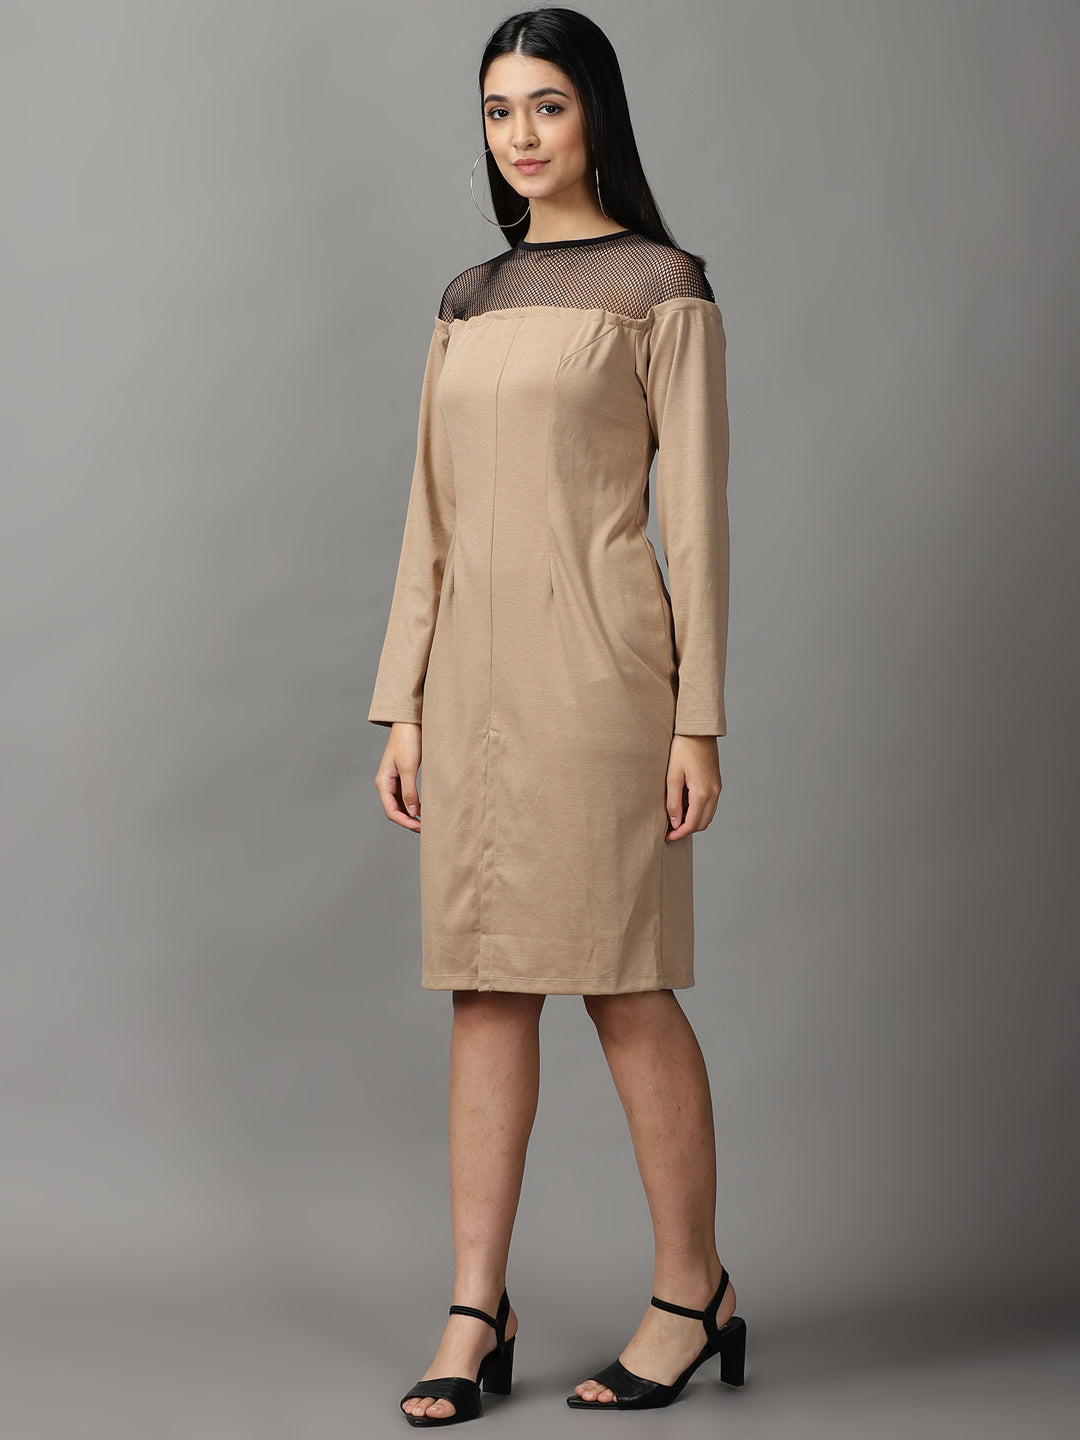 Women's Beige Solid Bodycon Dress